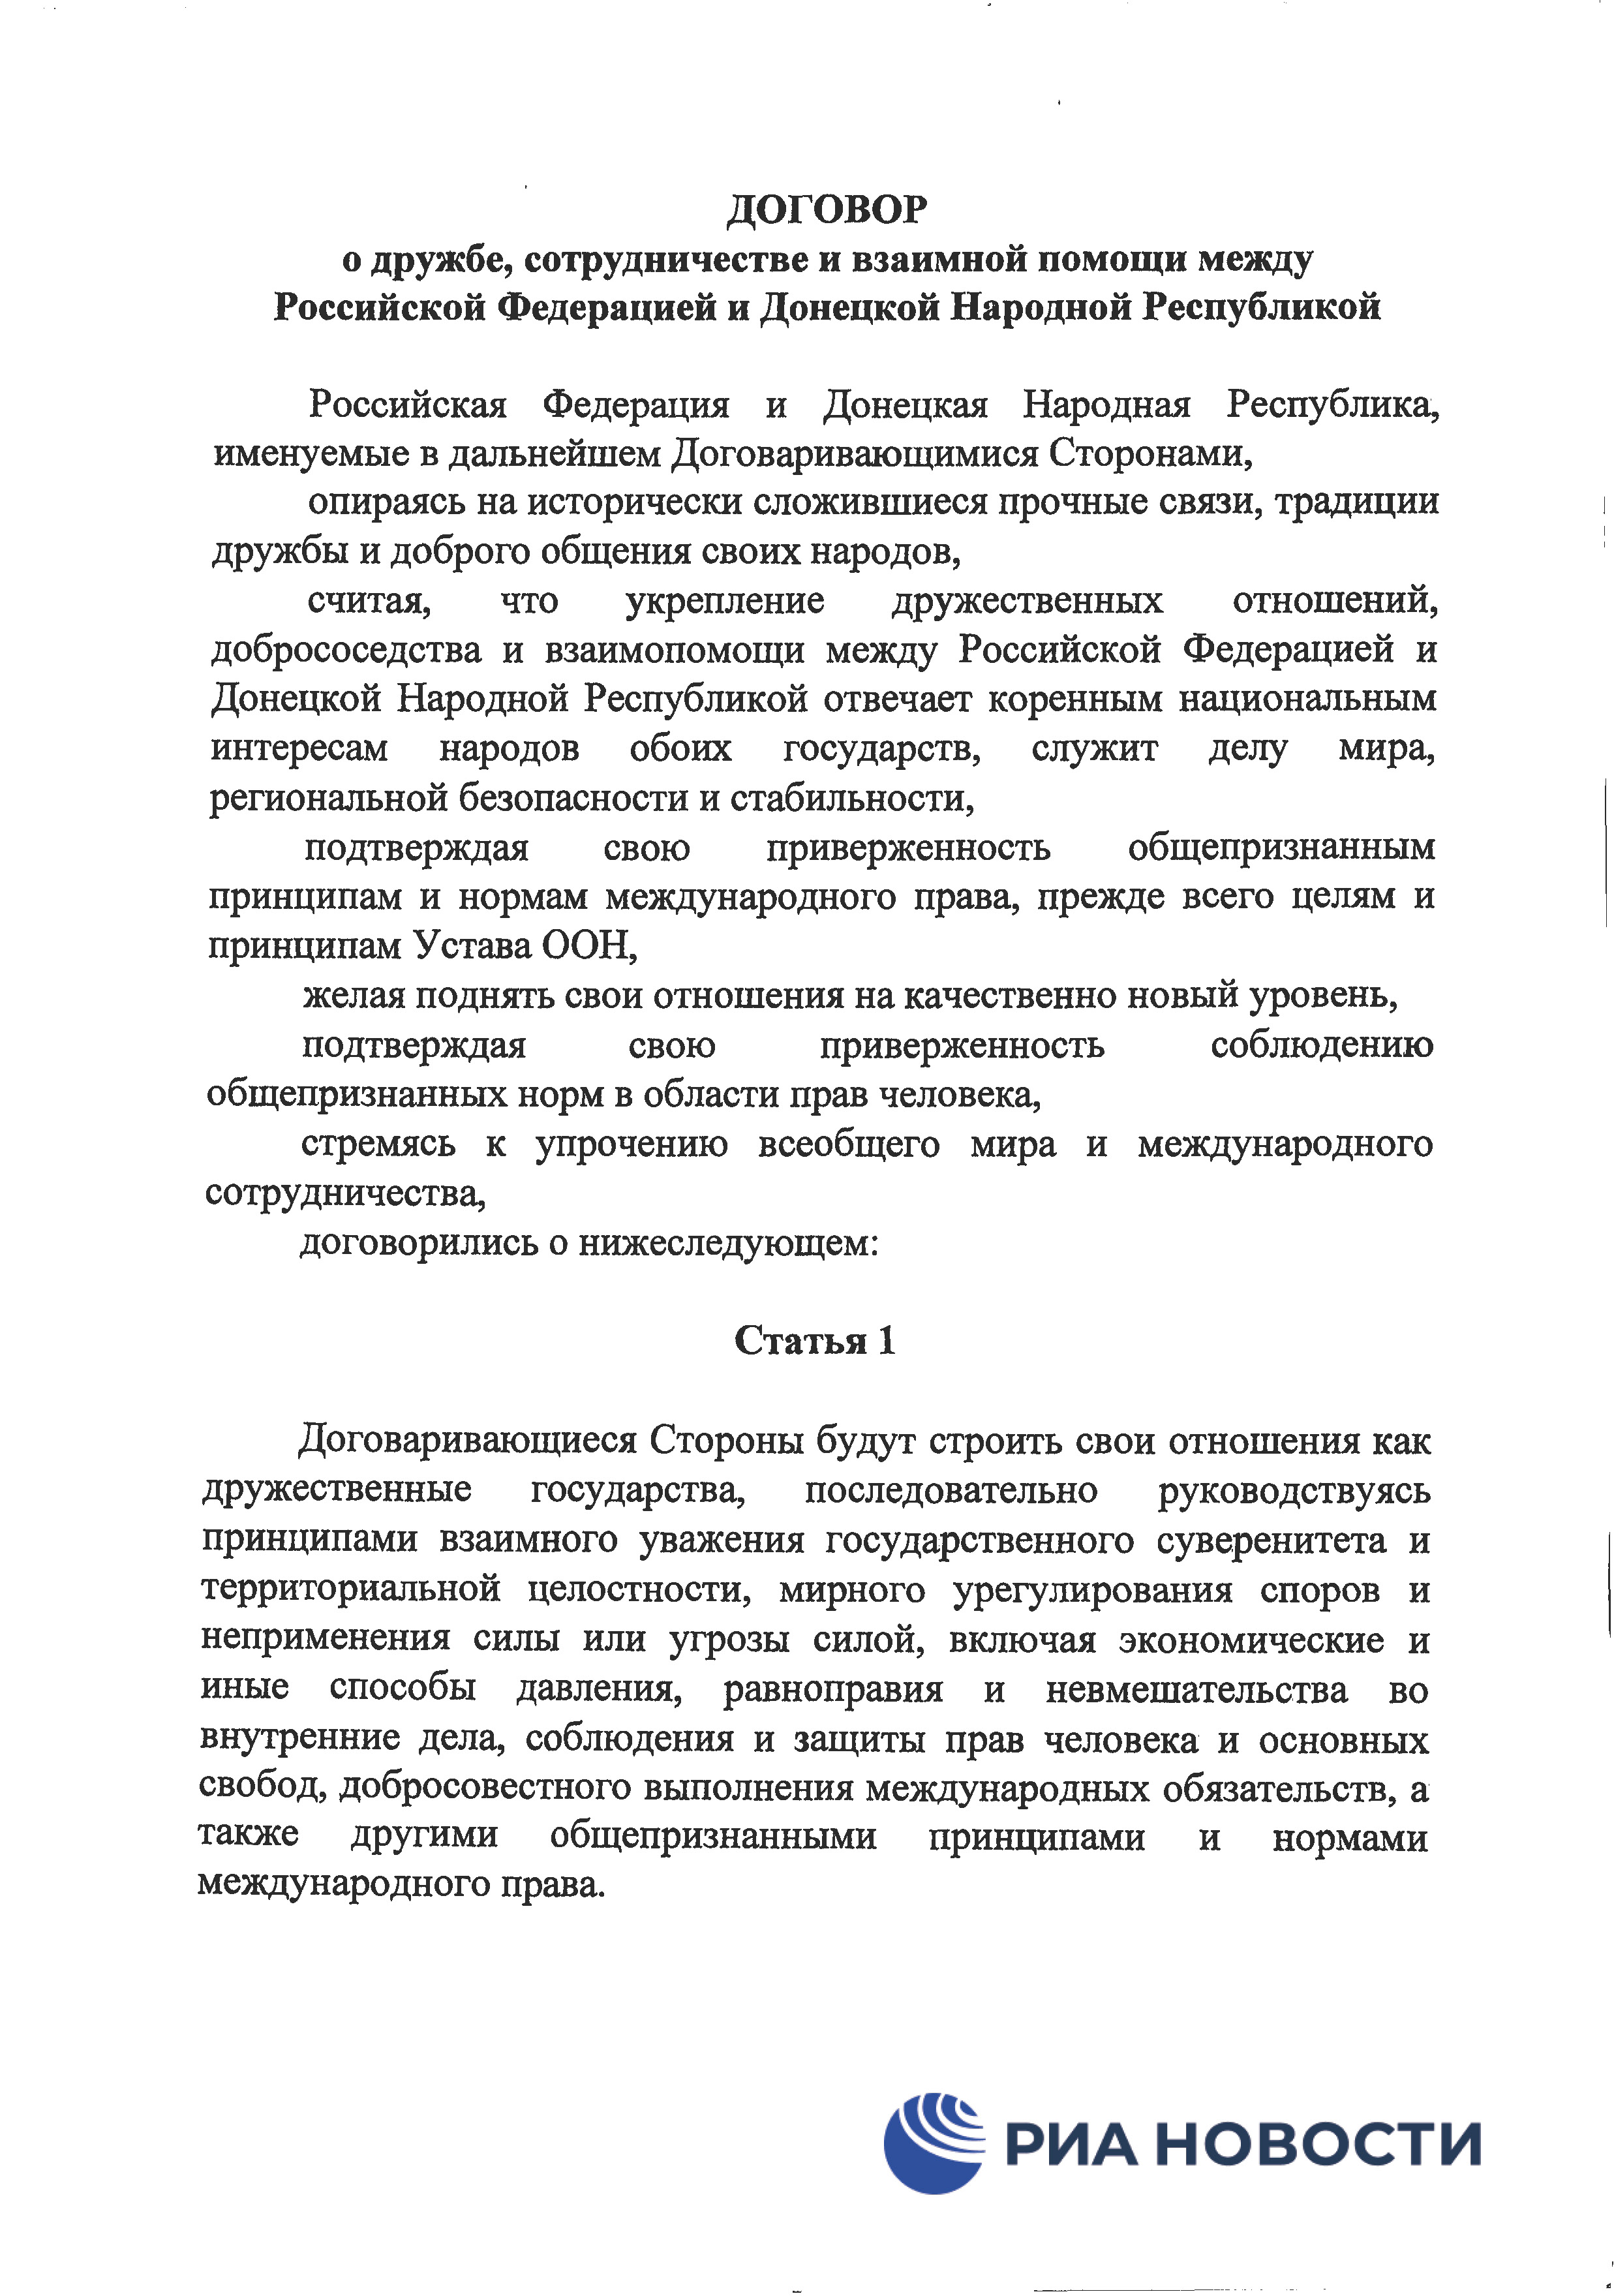 Договор о дружбе России с ДНР и ЛНР - страница 4